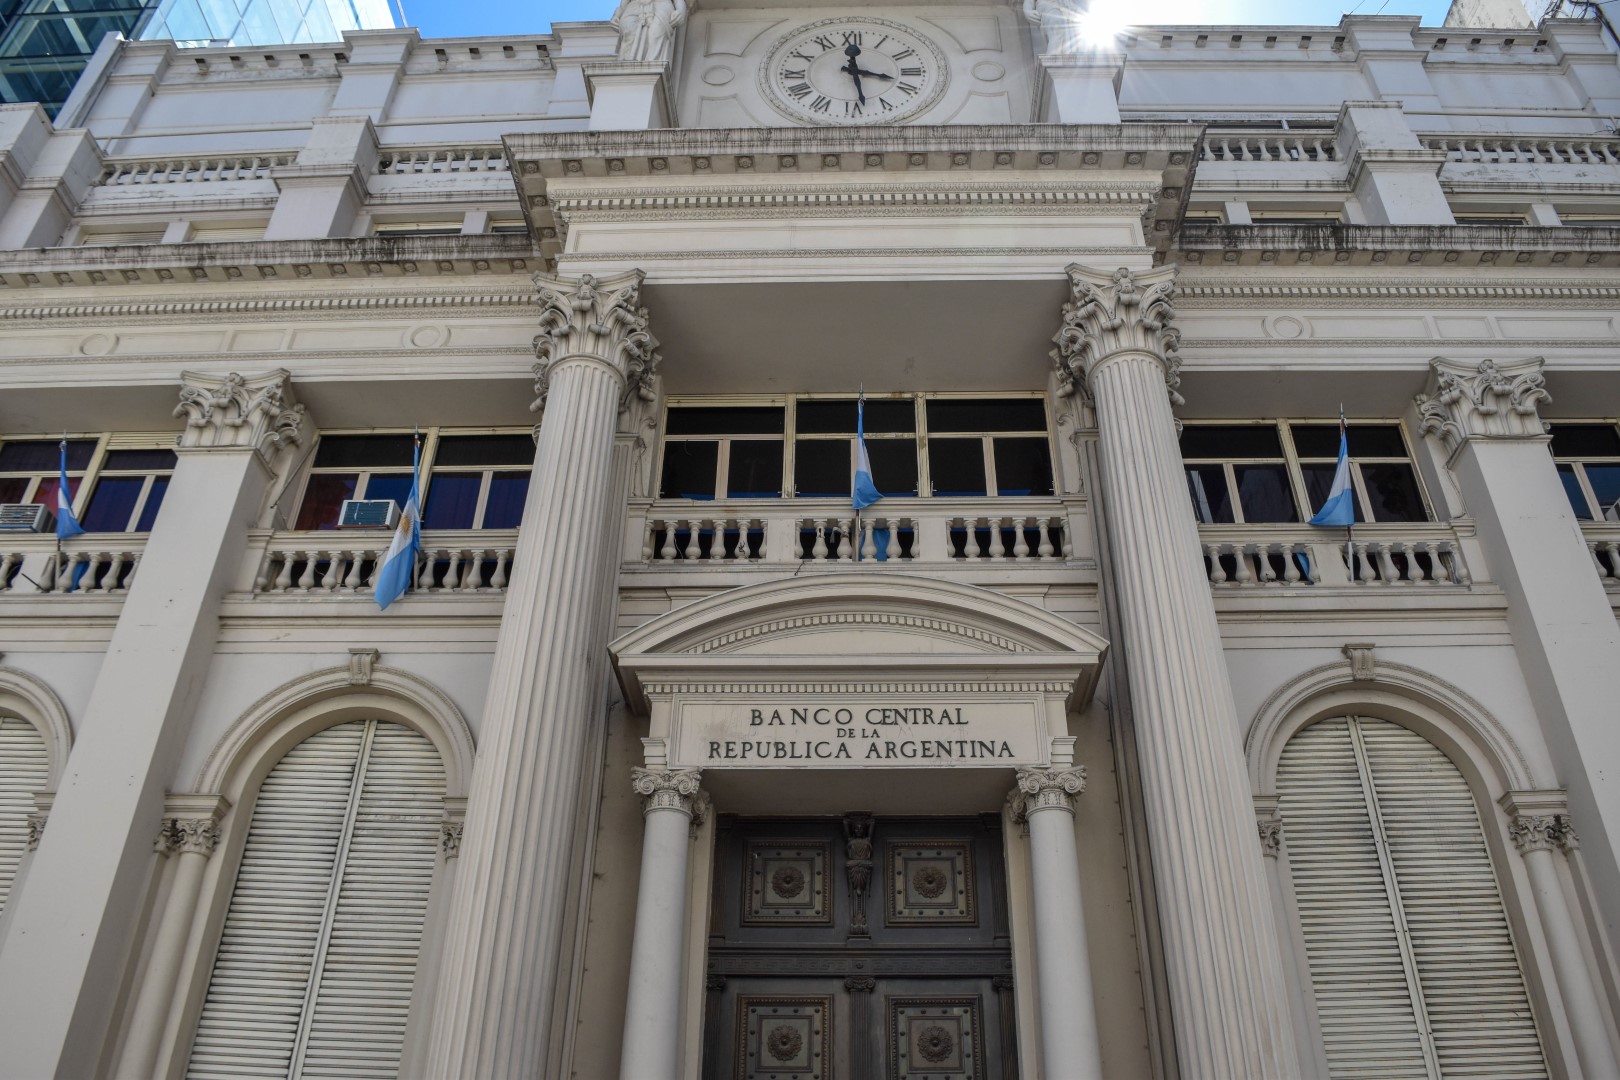 Banco Central de la República Argentina, Reconquista 266, C1003 ABF, Buenos Aires